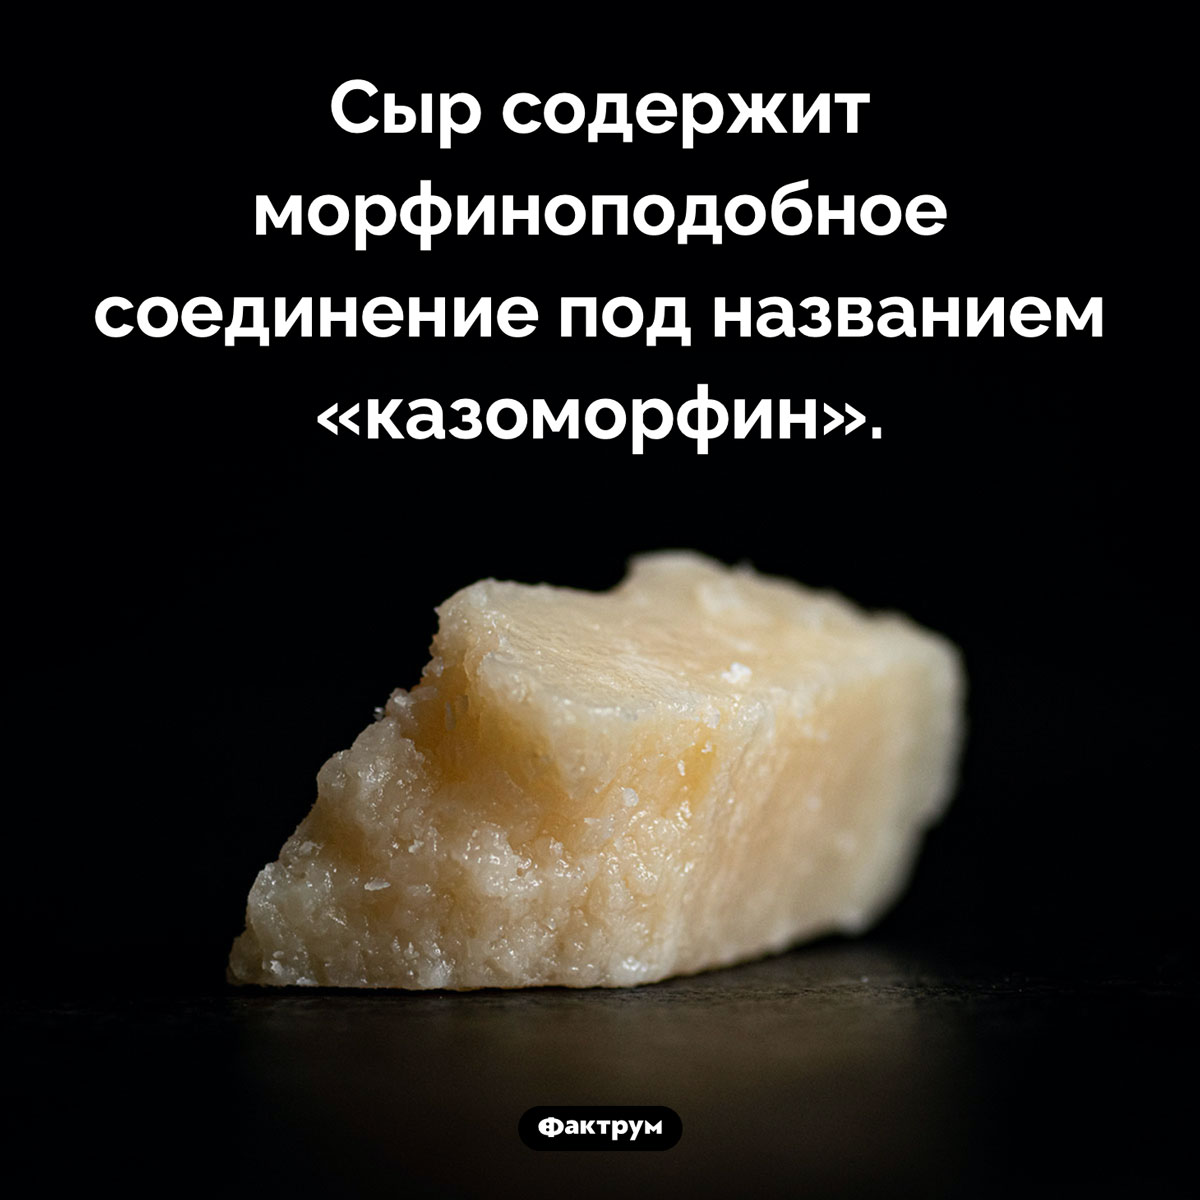 Морфиноподобное соединение в сыре. Сыр содержит морфиноподобное соединение под названием «казоморфин».